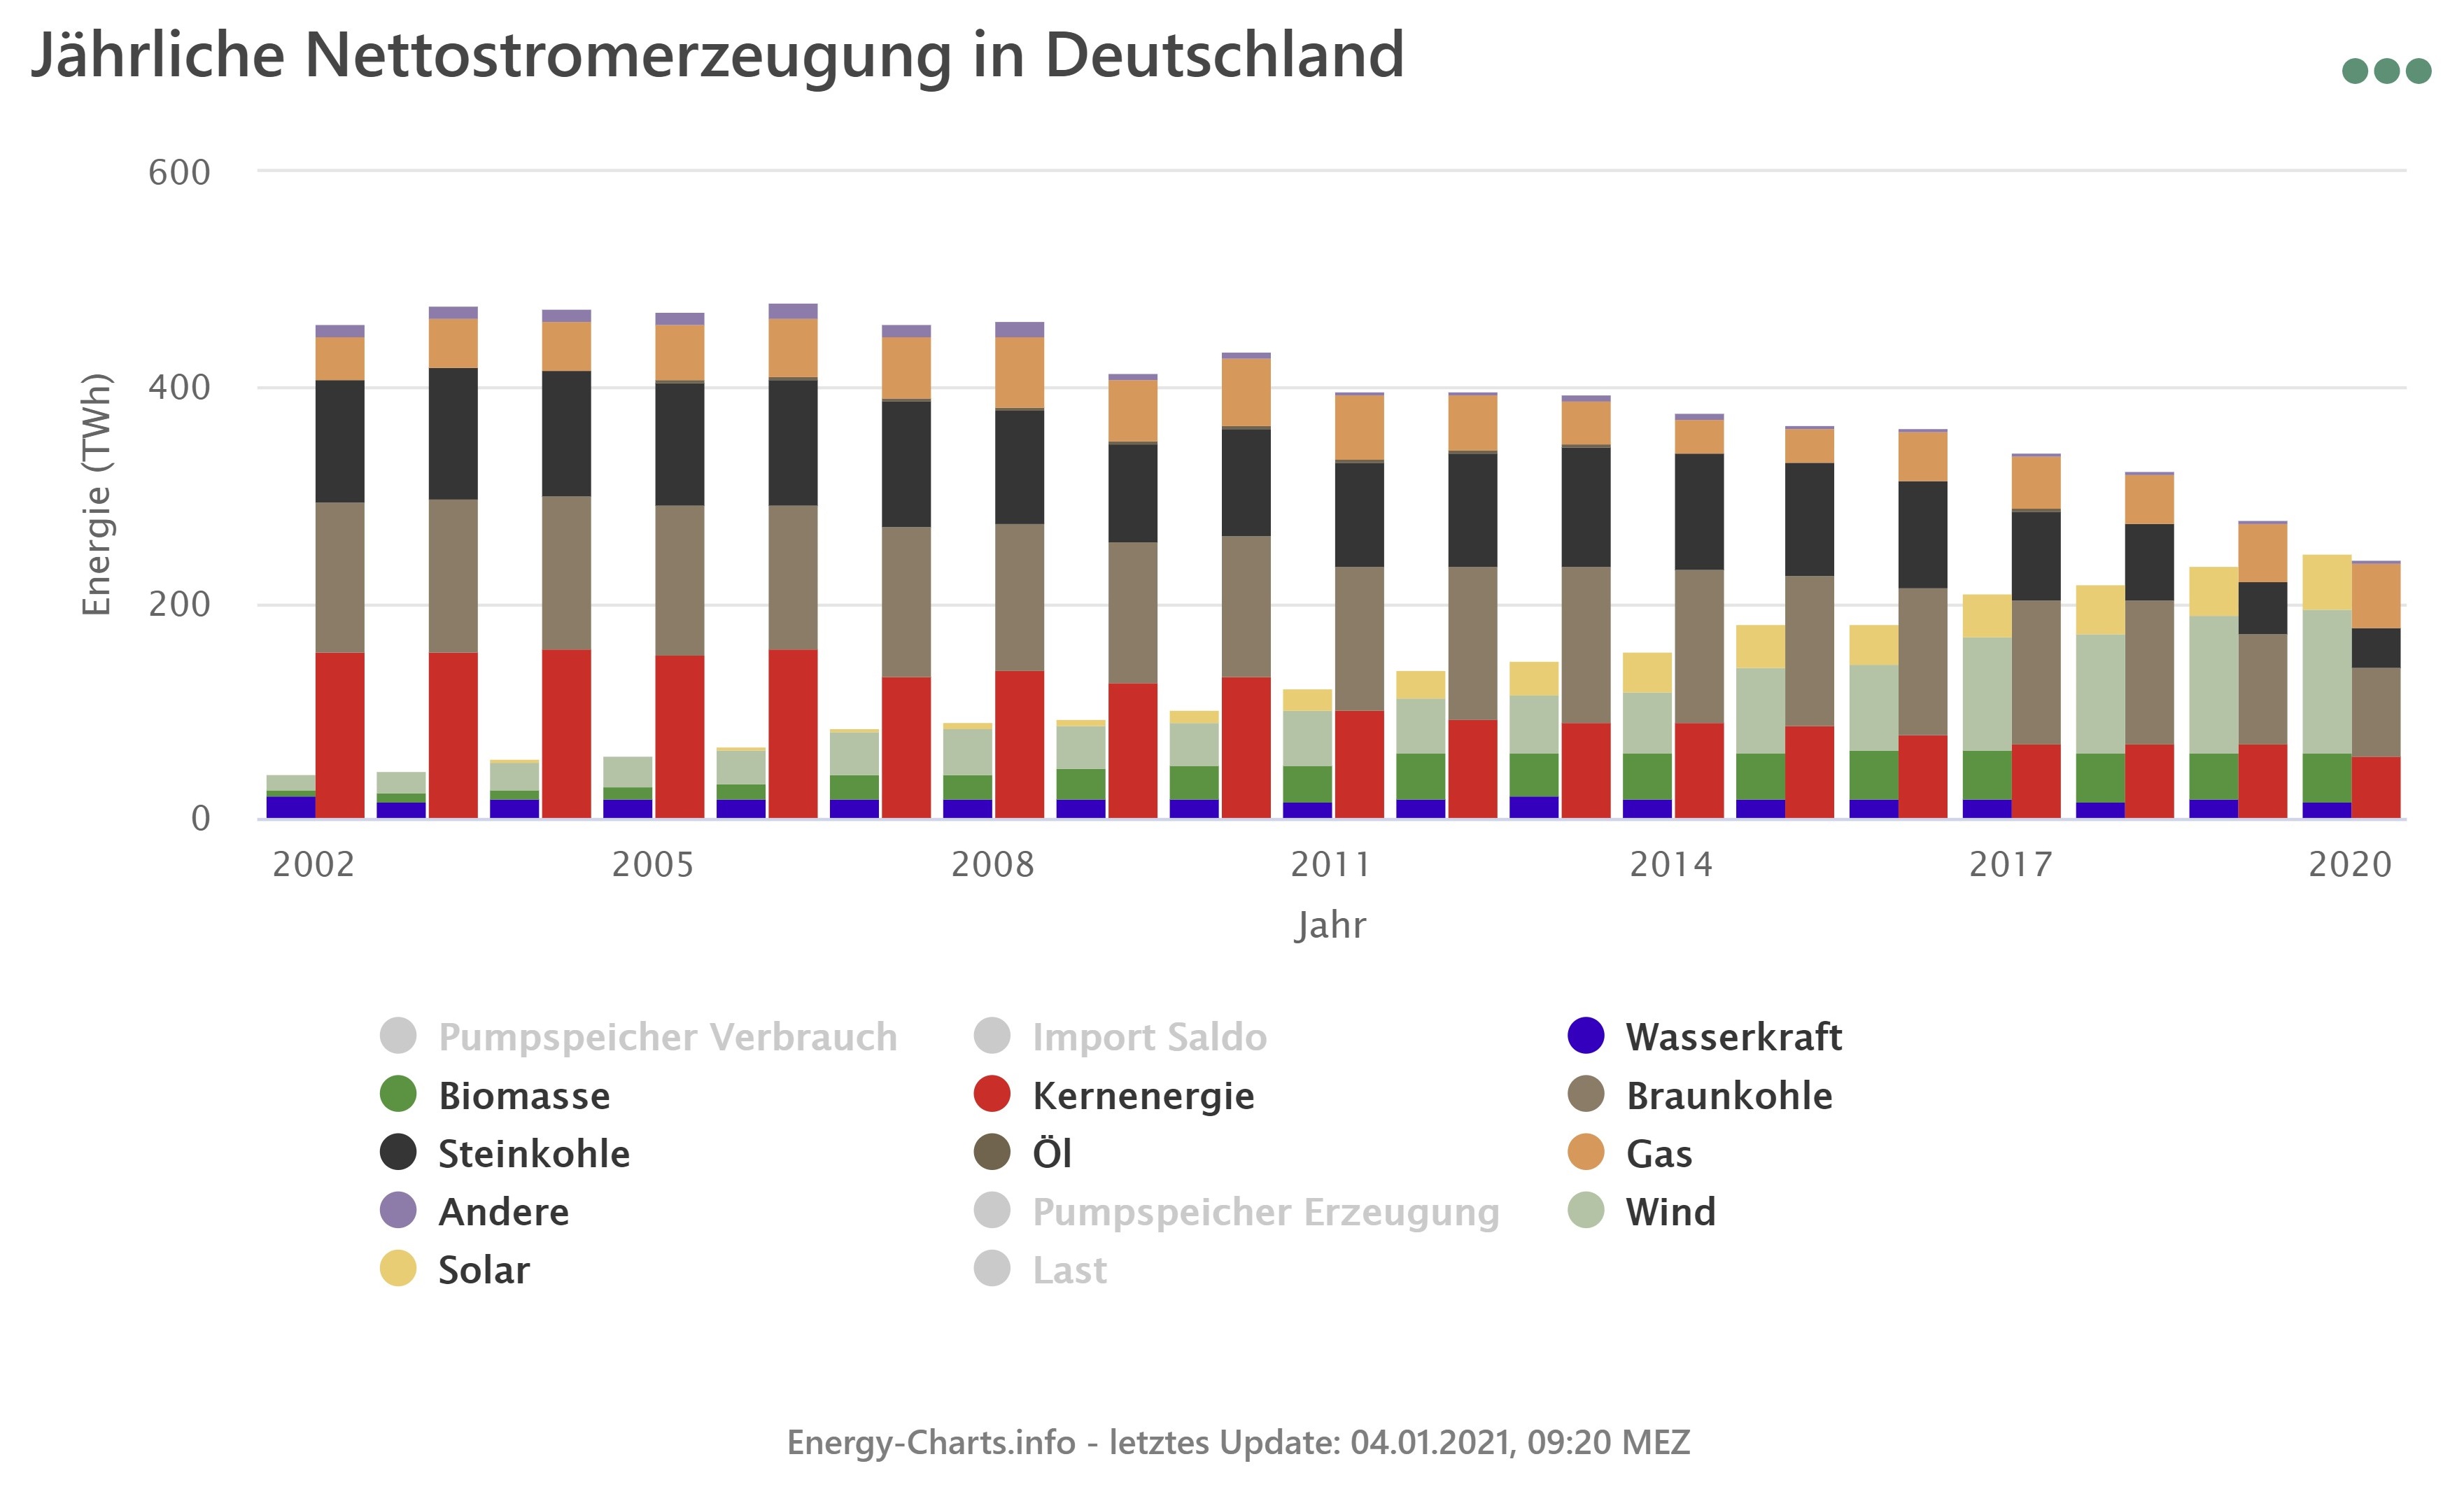 Nettostromerzeugung in Deutschland 2020: erneuerbare ...